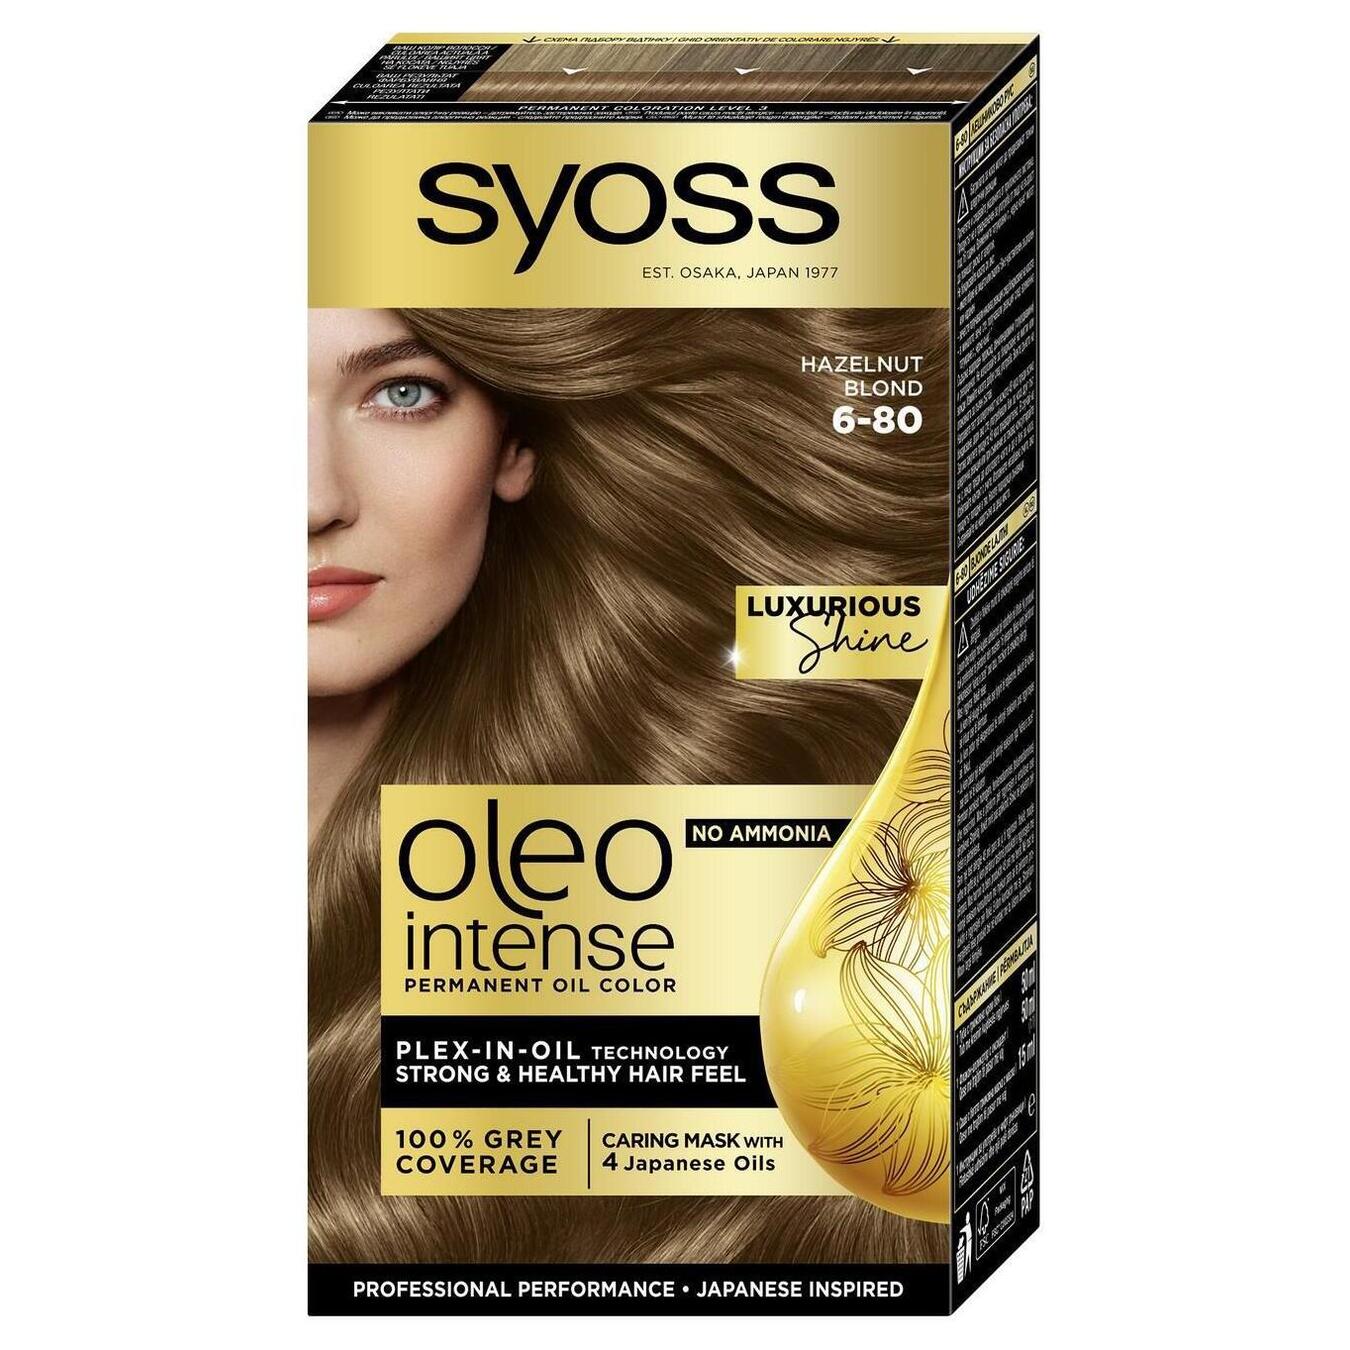 Hair dye Syoss Oleo golden blond 6-80